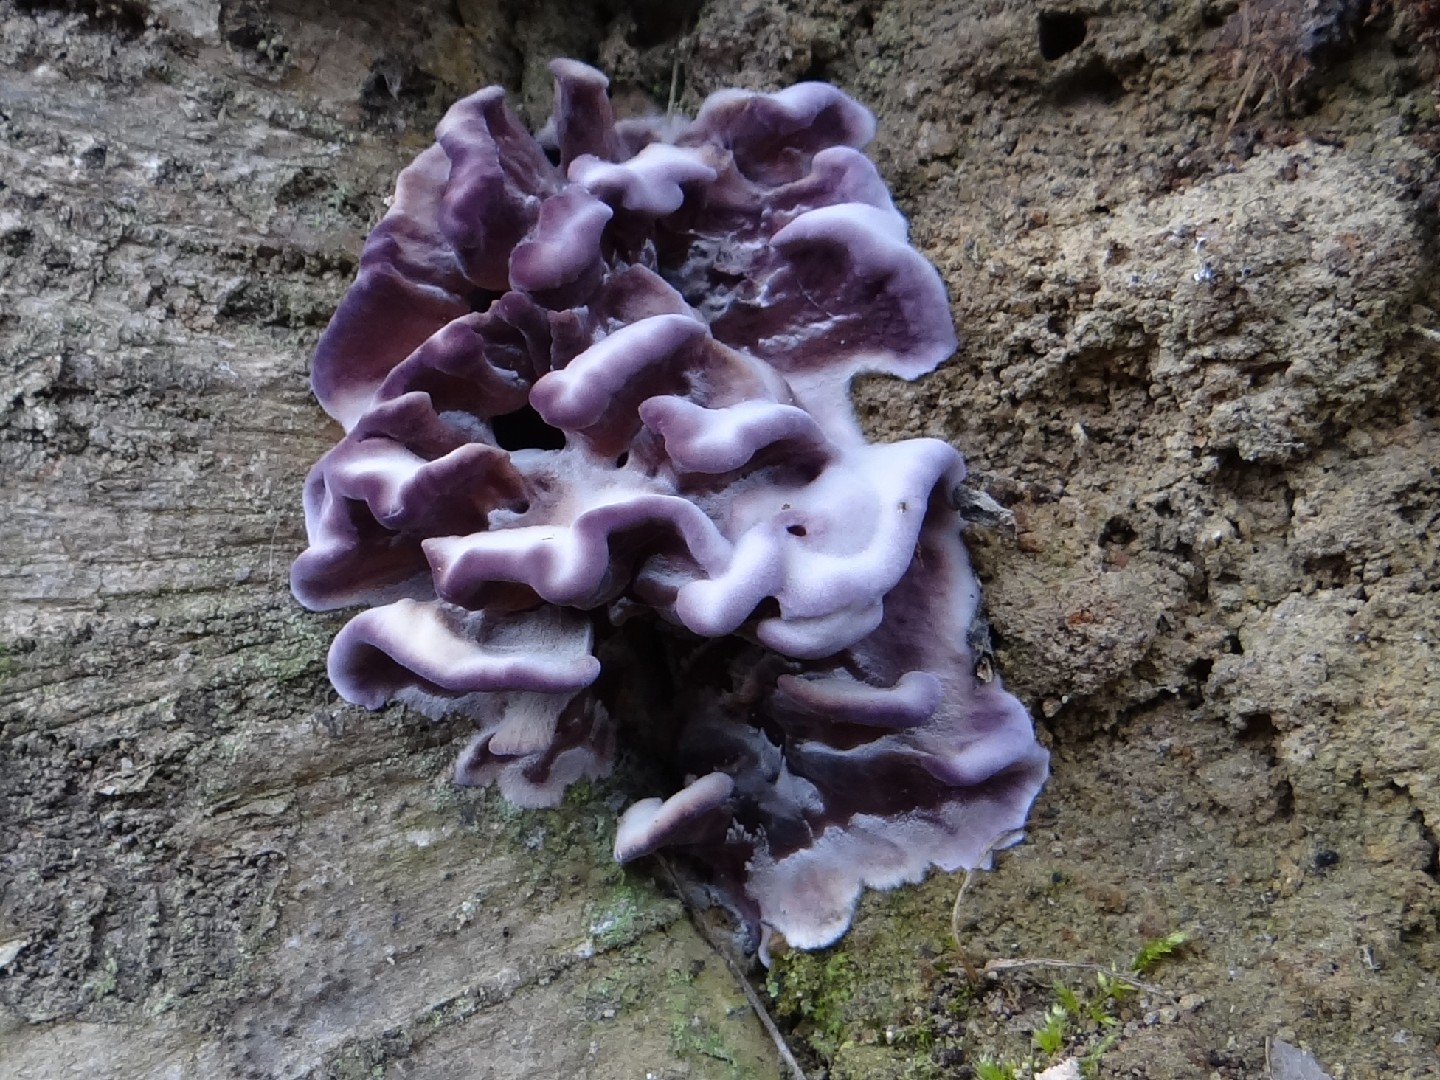 Silverleaf fungus (Chondrostereum purpureum)